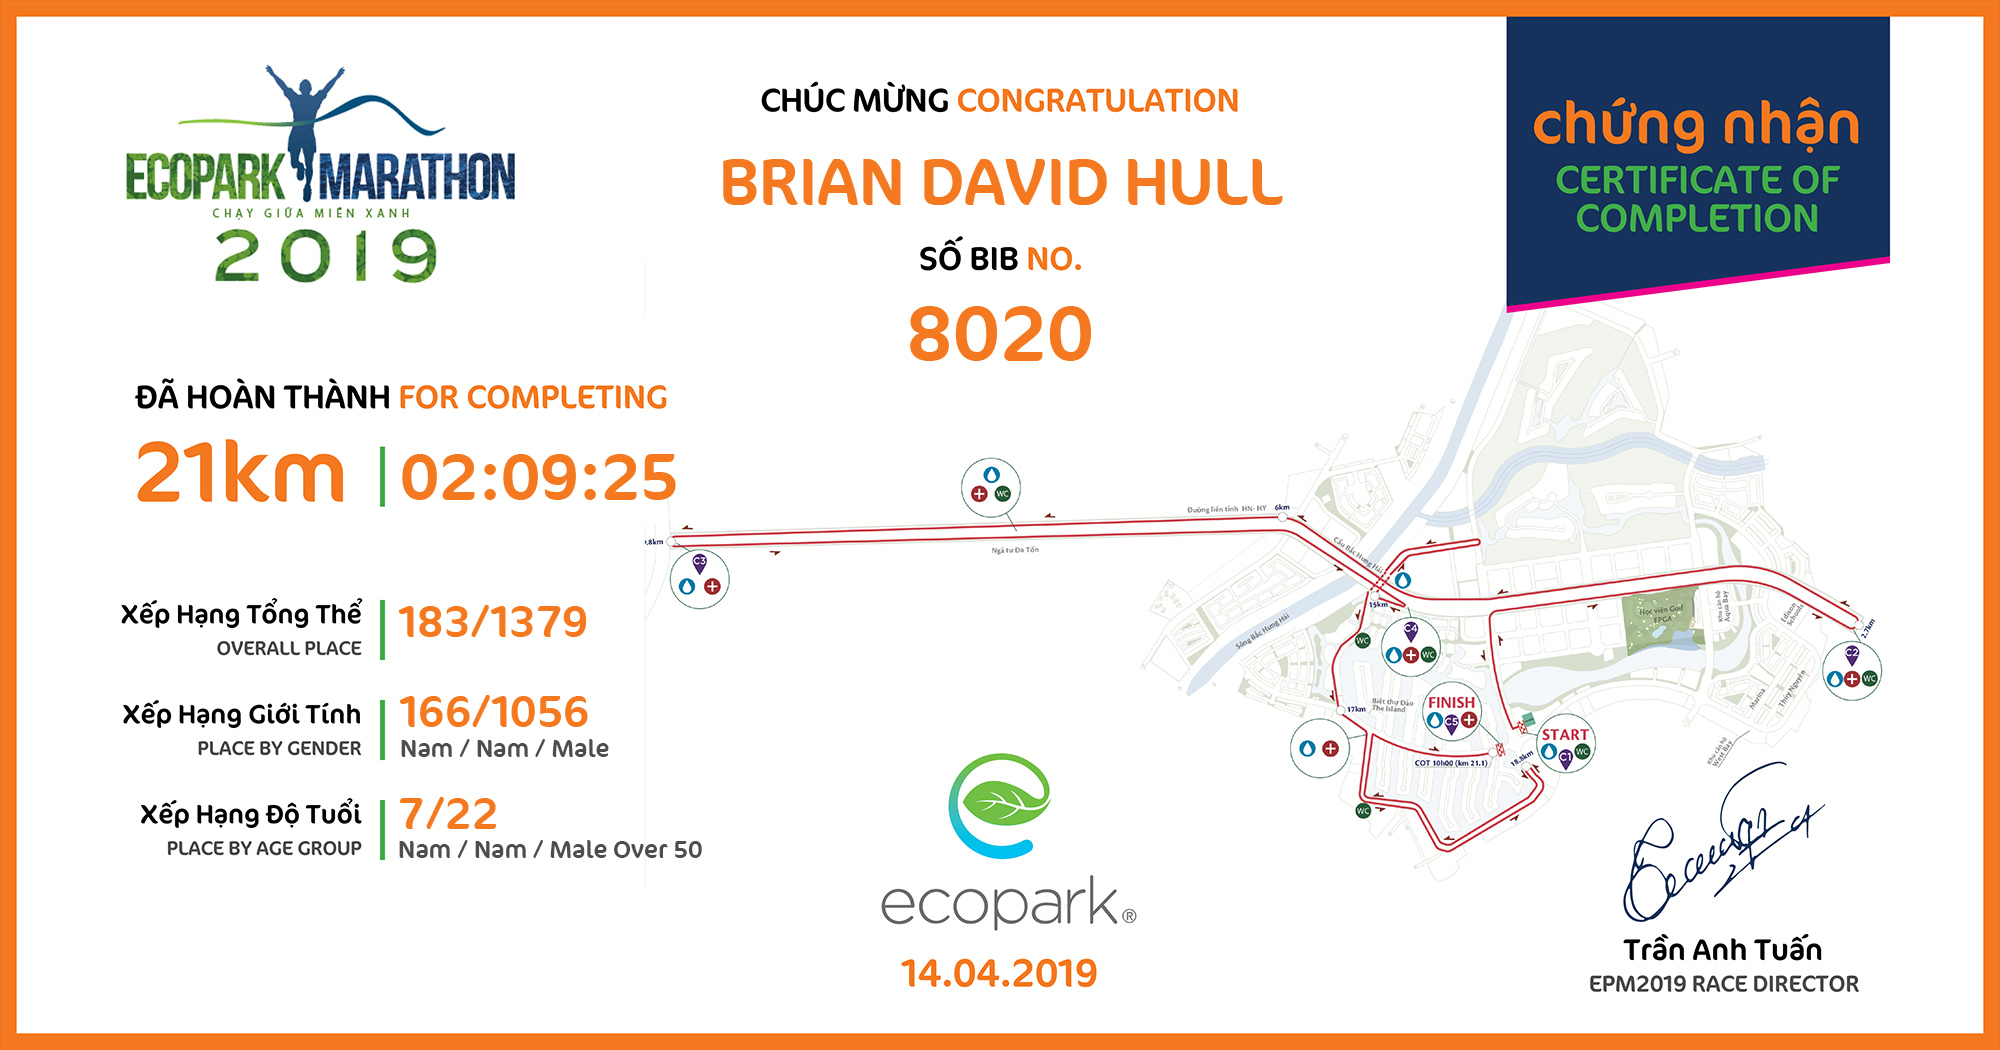 8020 - BRIAN DAVID HULL